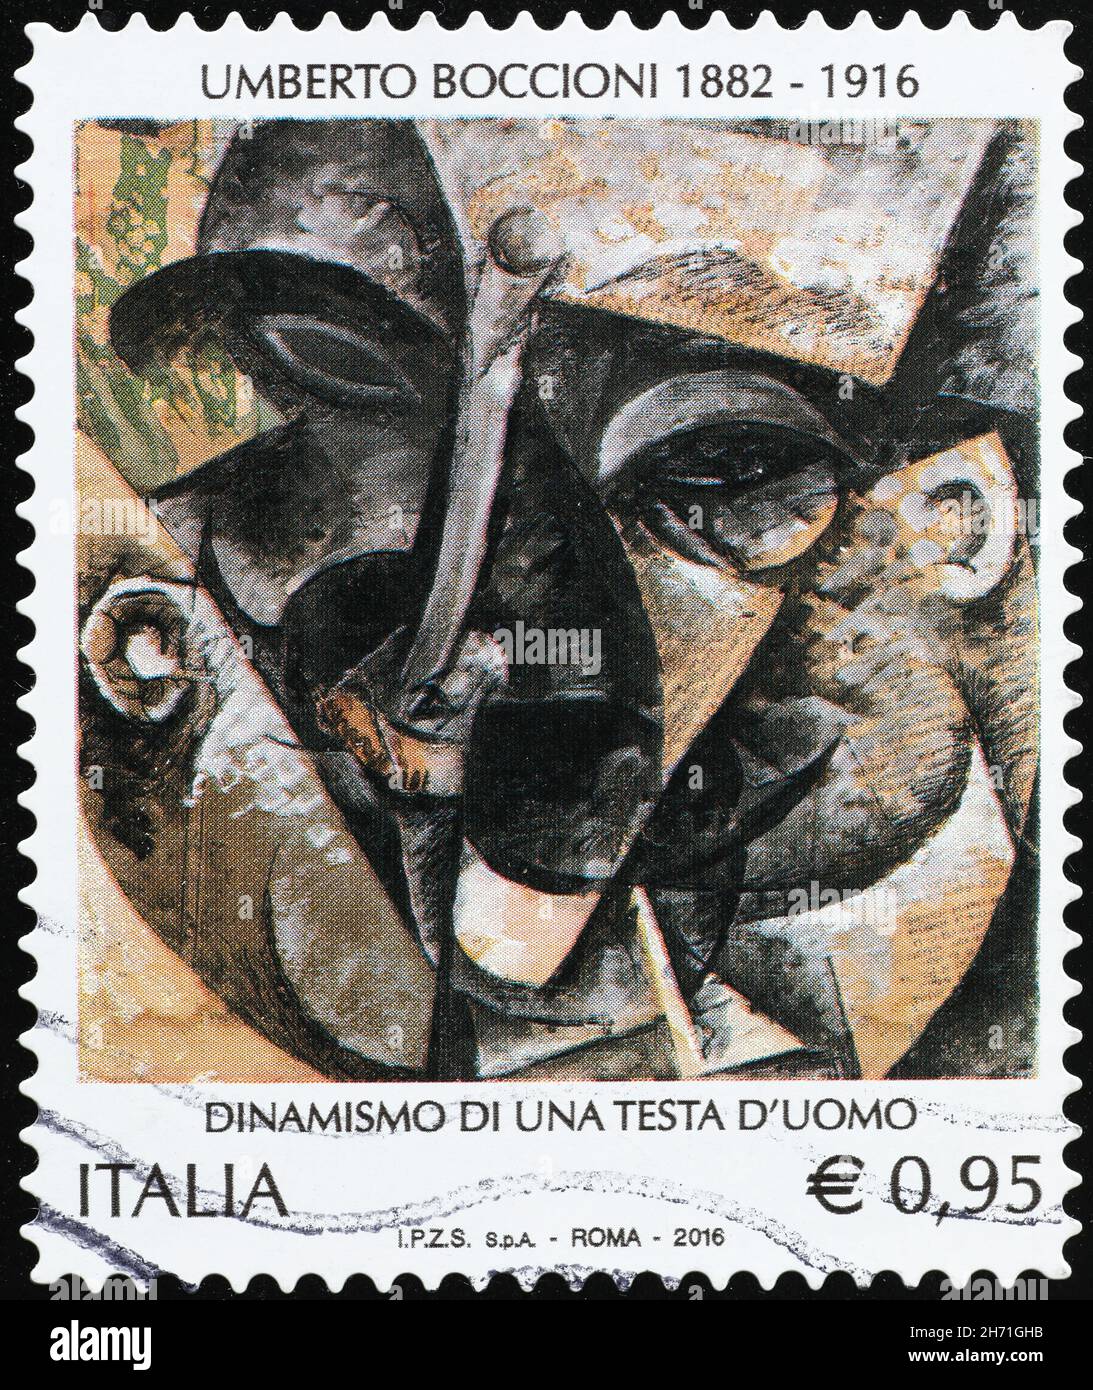 Peinture par Umberto Boccioni sur timbre-poste italien Banque D'Images